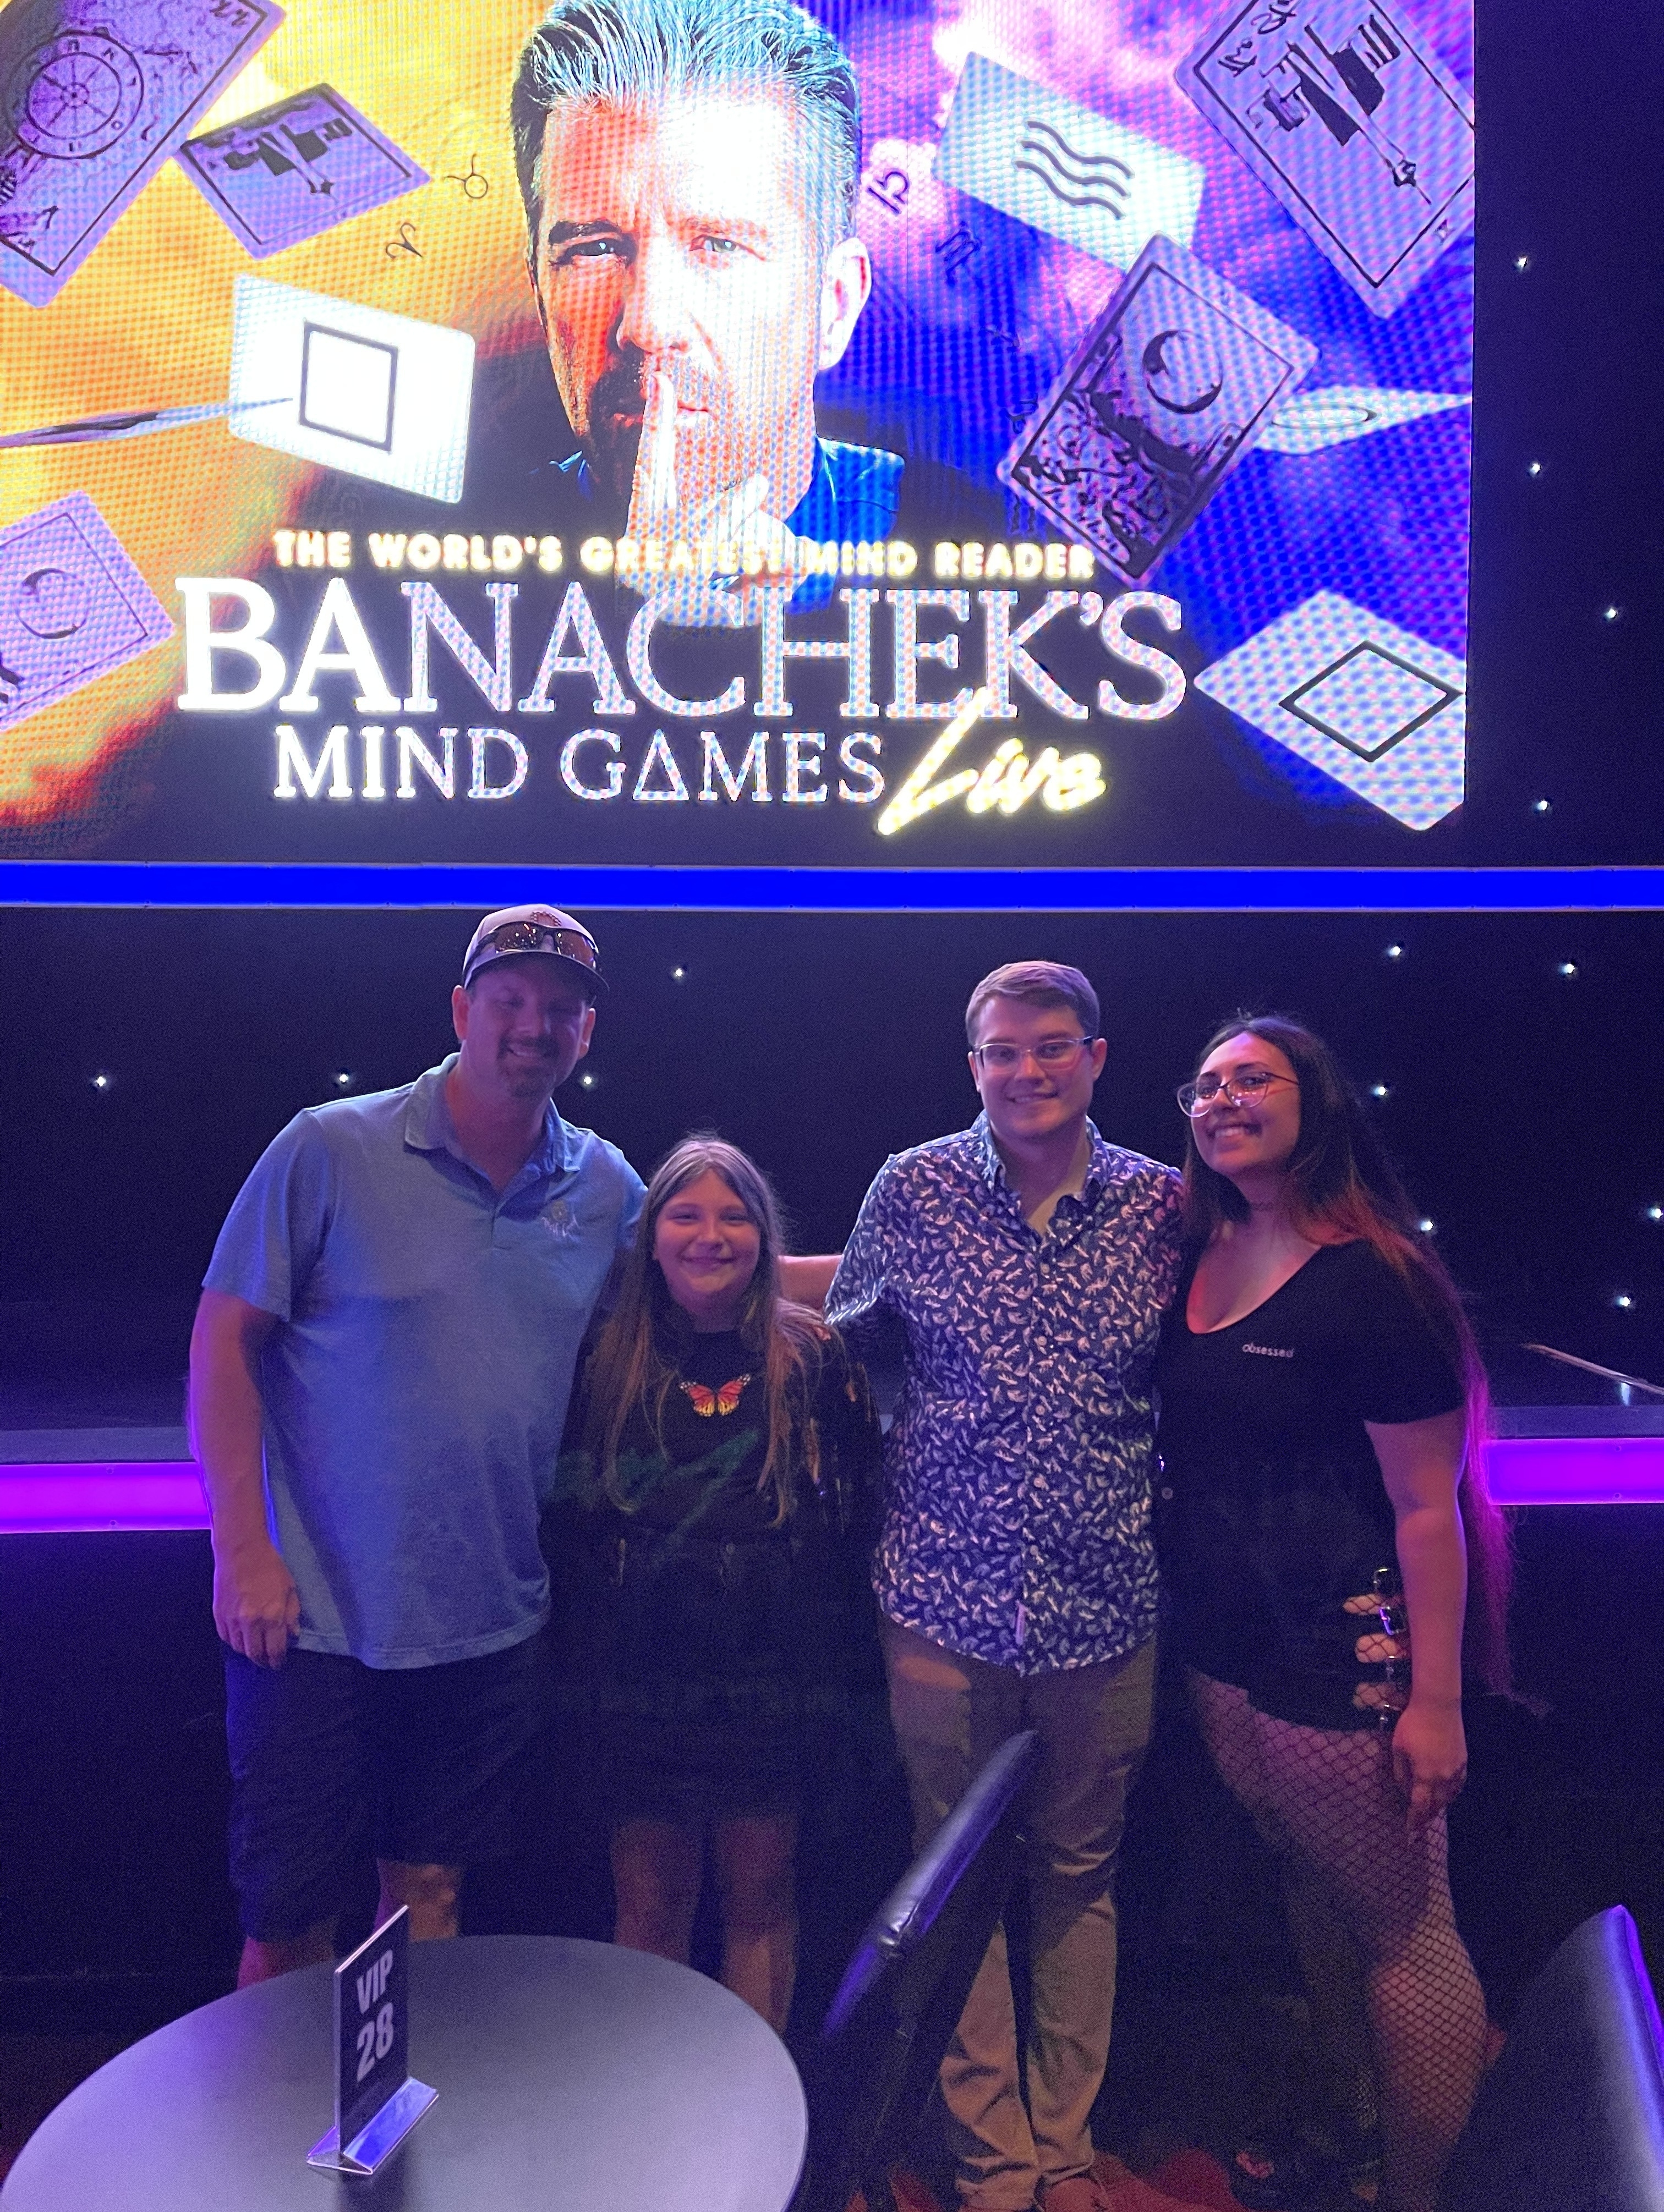 Banachek's Mind Games